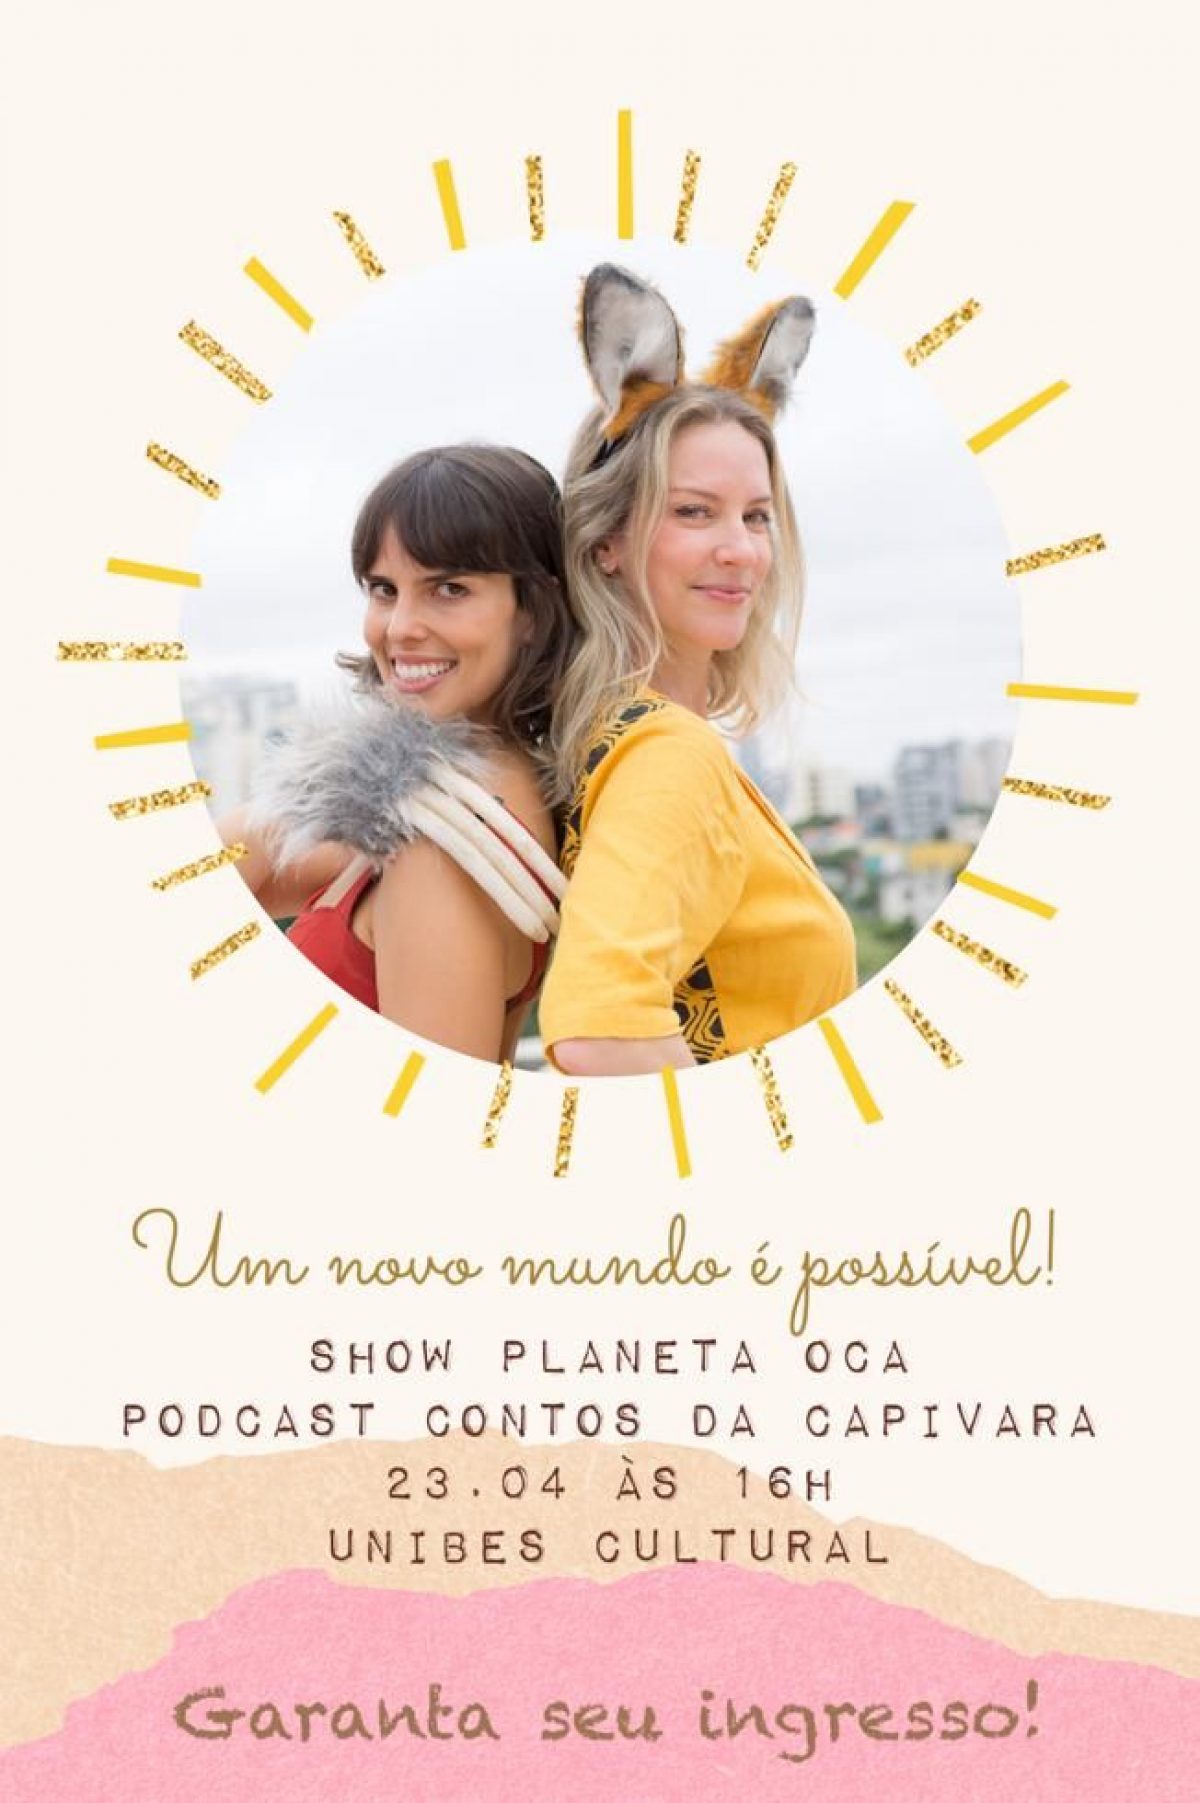 Contos da Capivara: podcast infantil sobre sustentabilidade e meio